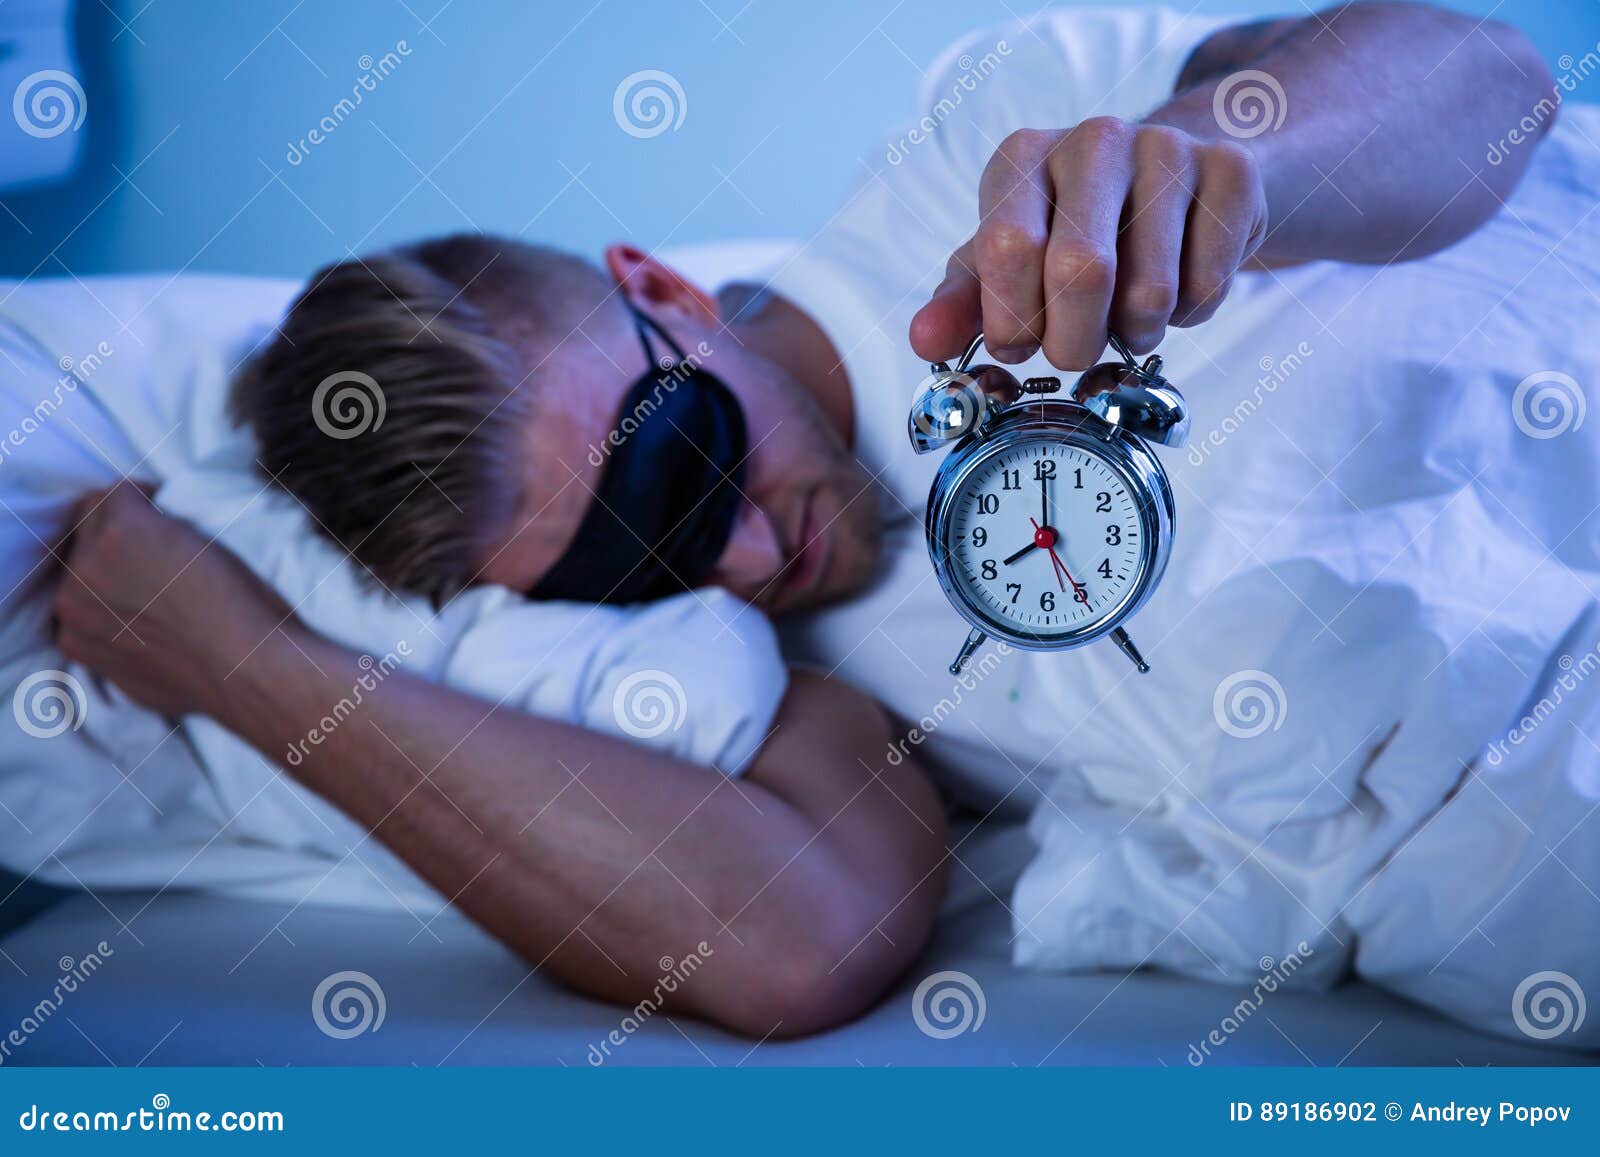 Сплю по 20 часов. Биологические часы. Часы на руках на кровати. Биологические часы мужчины.